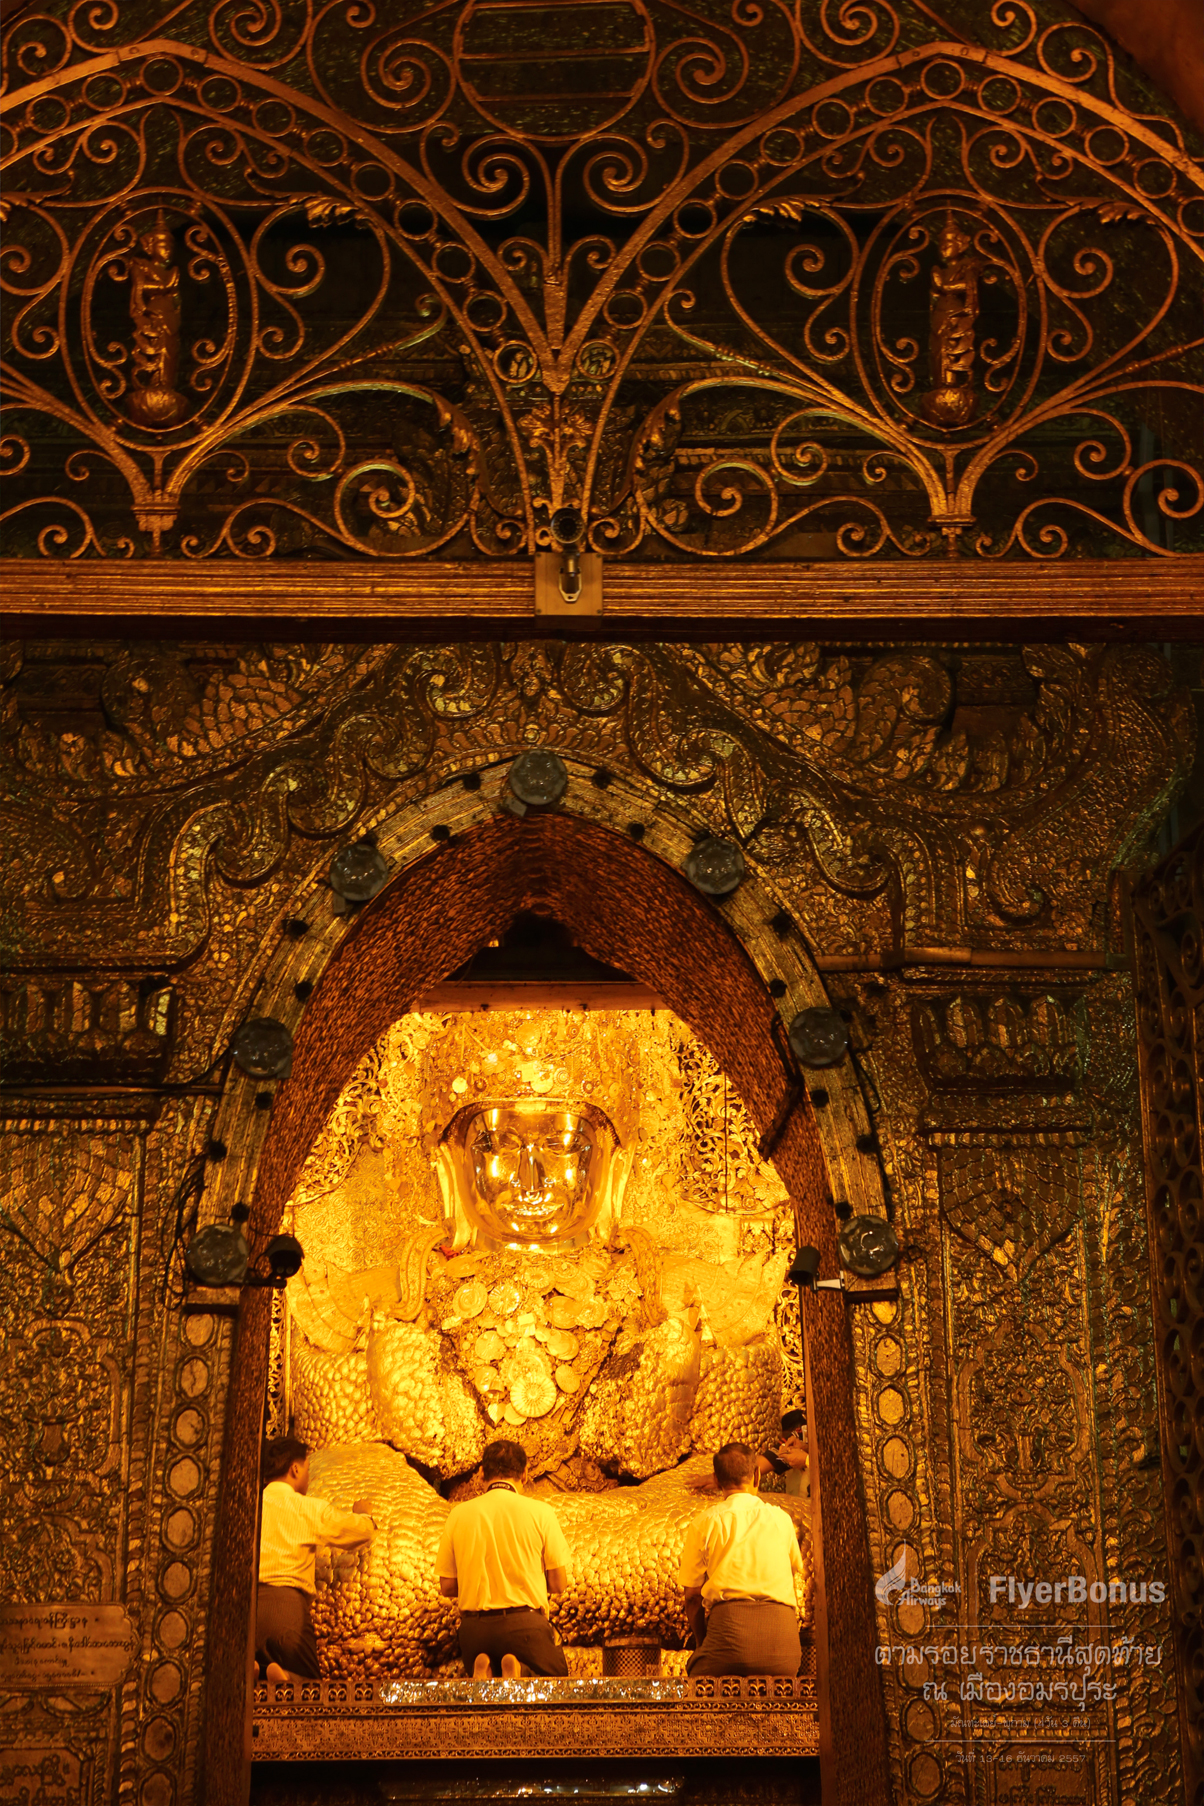 จุดหมายแรก วัดพระมหามัยมุนี เป็นพระพุทธรูปที่ชาวพม่าเคารพบูชาสูงสุด